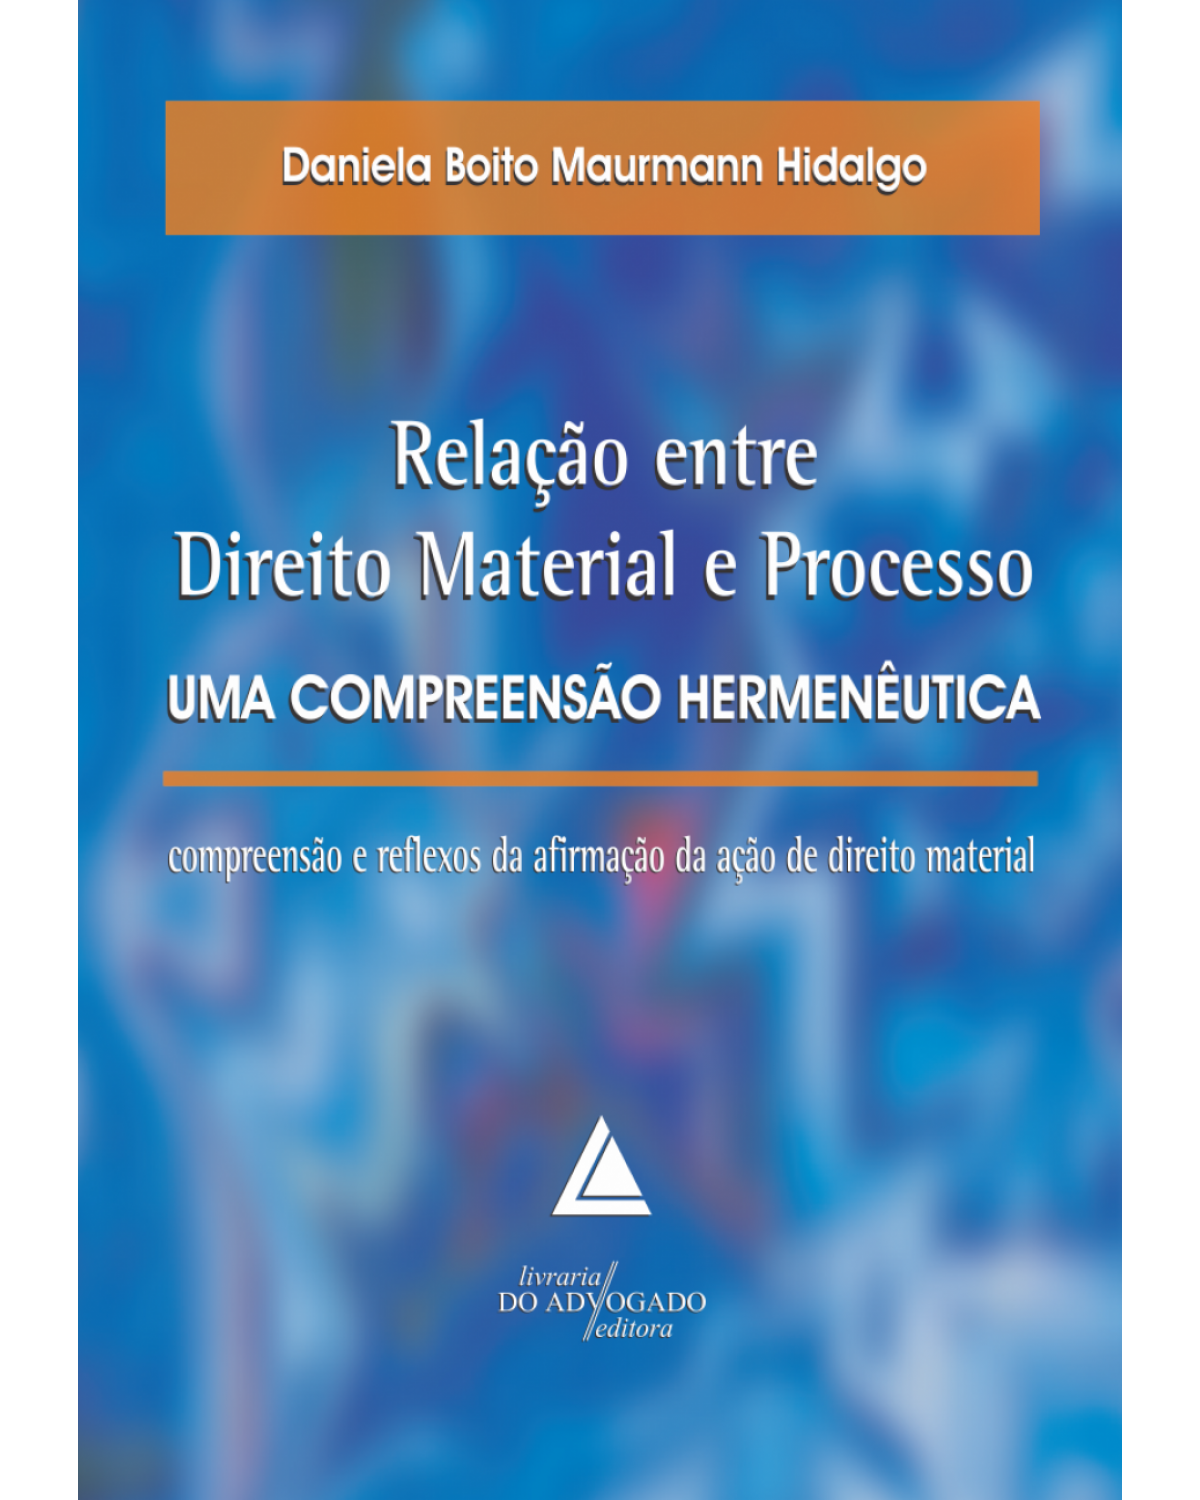 Relação entre direito material e processo - uma compreensão hermenêutica: compreesão e reflexos da afirmação da ação de direito material - 1ª Edição | 2011